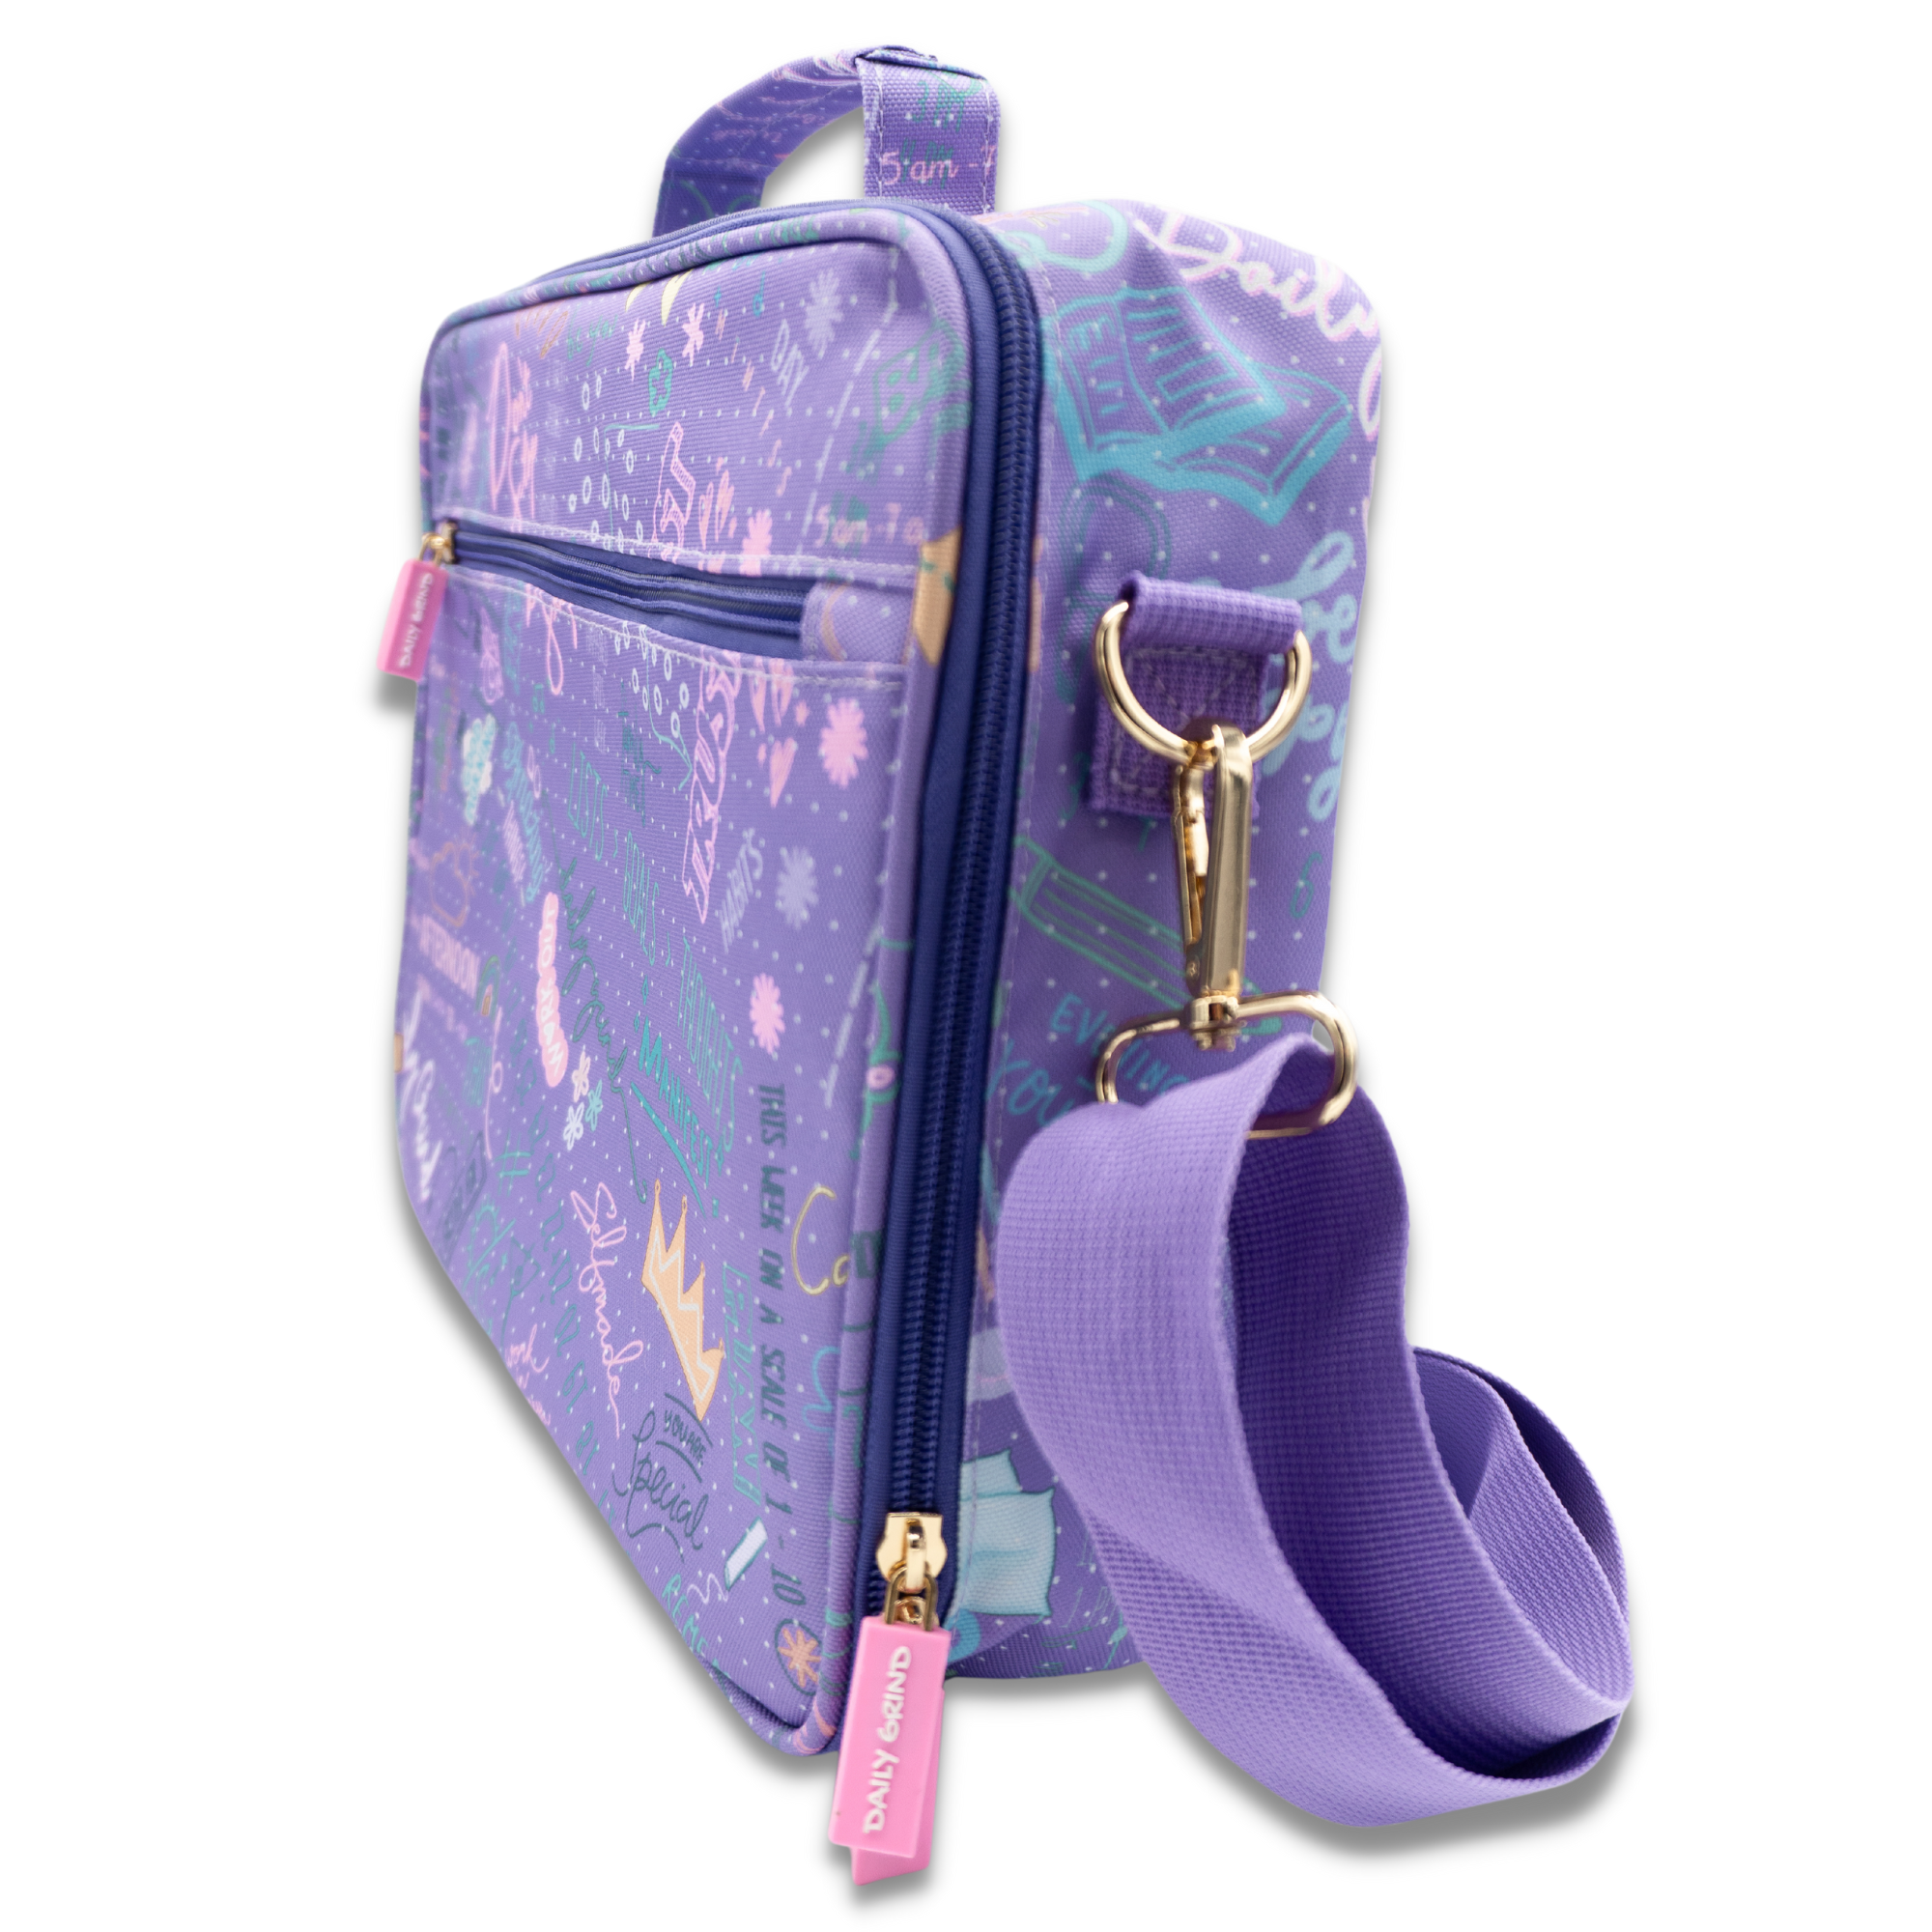 Backpack Organizer Insert for Rucksack Handbag Shoulder Bag - China Felt  Backpack and Felt Laptop Sleeve price